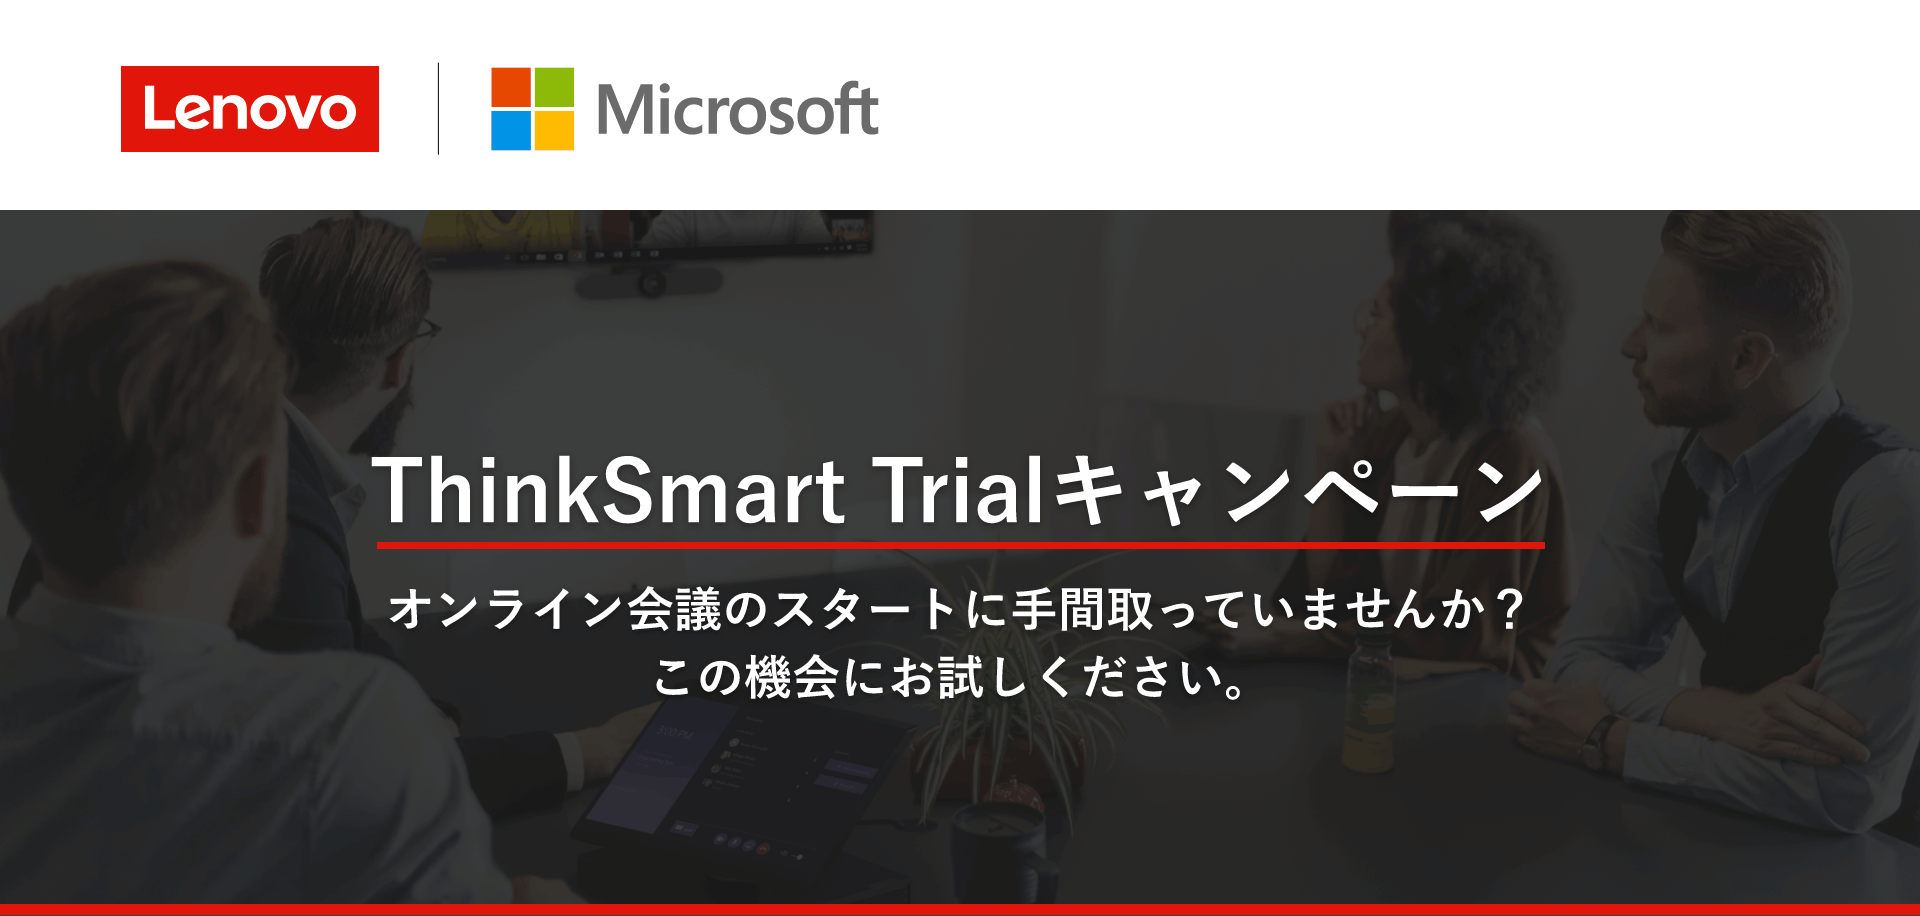 ThinkSmart Trialキャンペーン オンライン会議のスタートに手間取っていませんか？ この機会にお試しください。 Lenovo | Microsoft